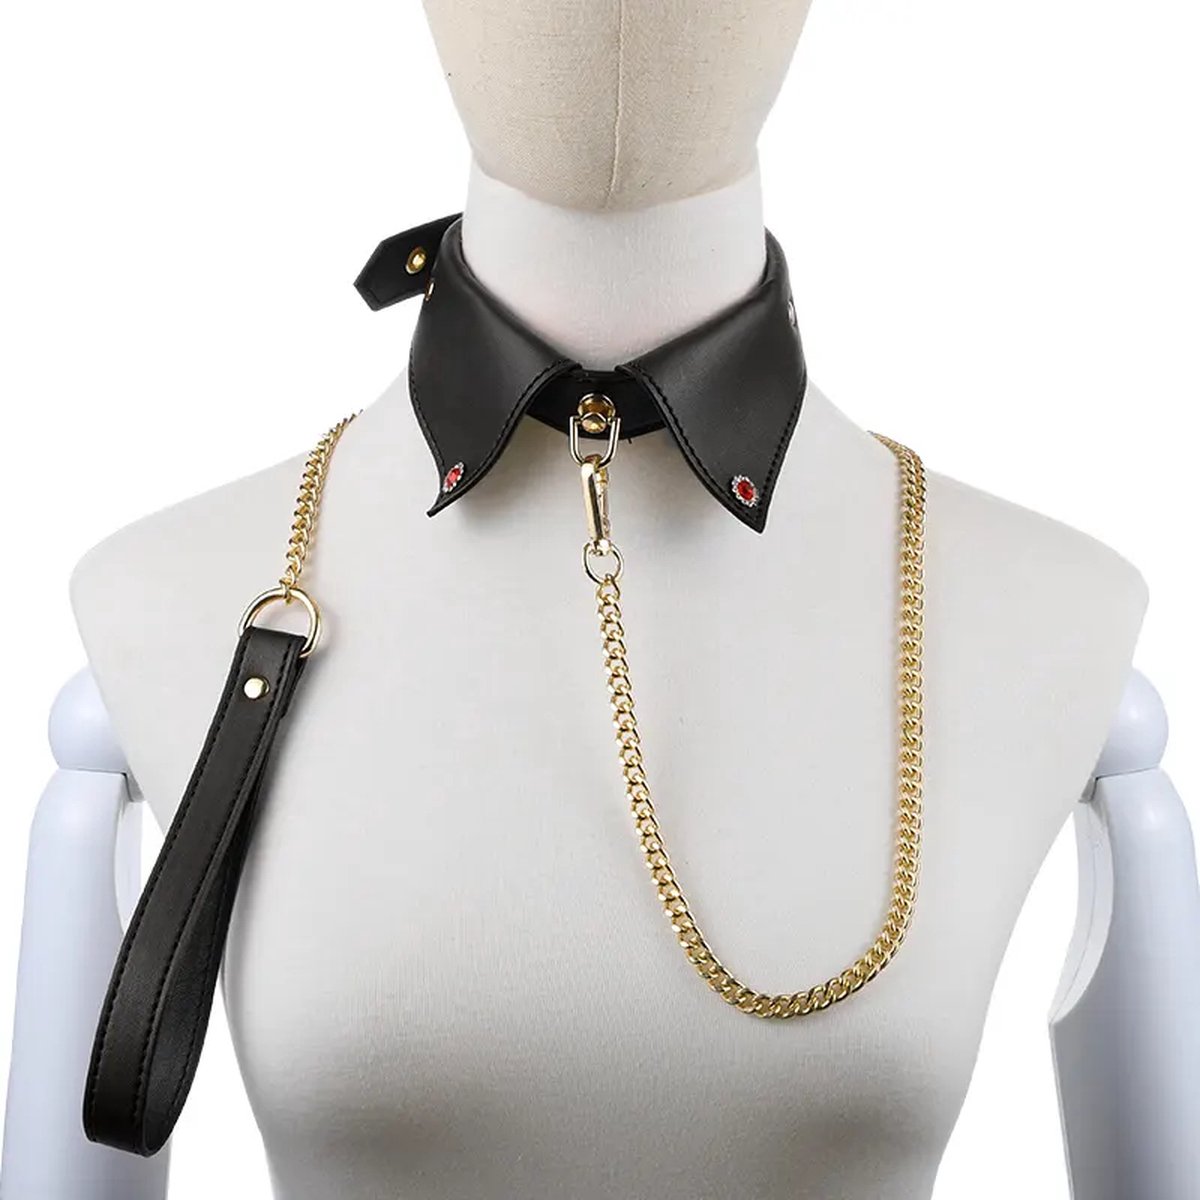 Halsband - Bondage - BDSM - multifunctionele halsband - aanhaker